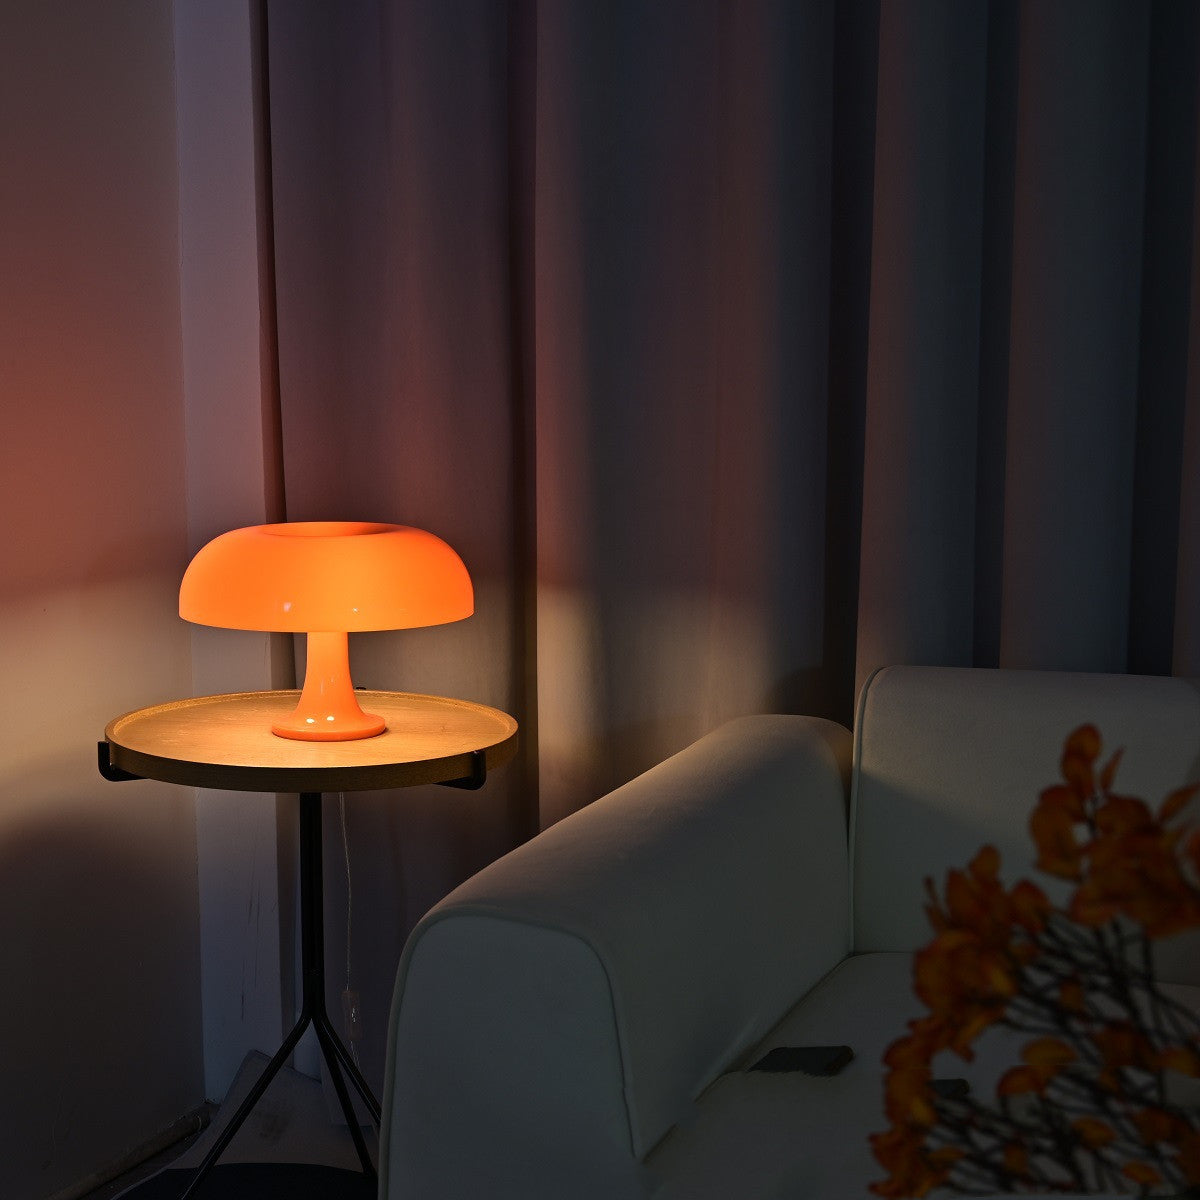 Mushroom Table Bedroom Living Room Decorative Table Lamp